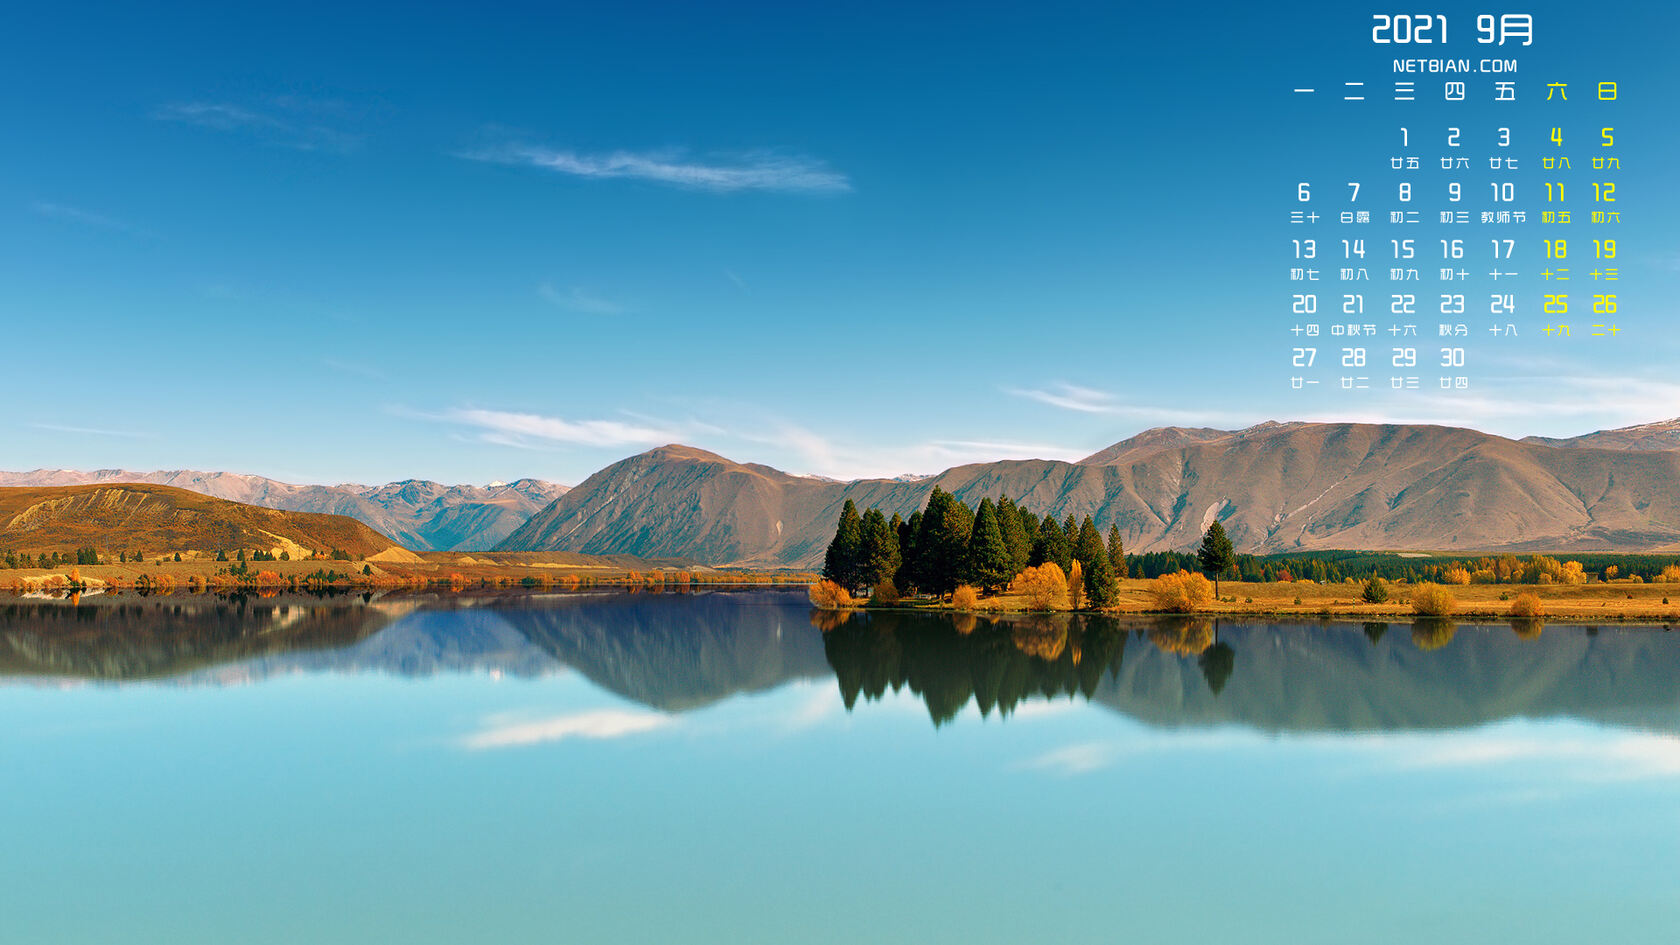 2021年9月日历，如镜面般平静的湖面，山水景色壁纸日历图片